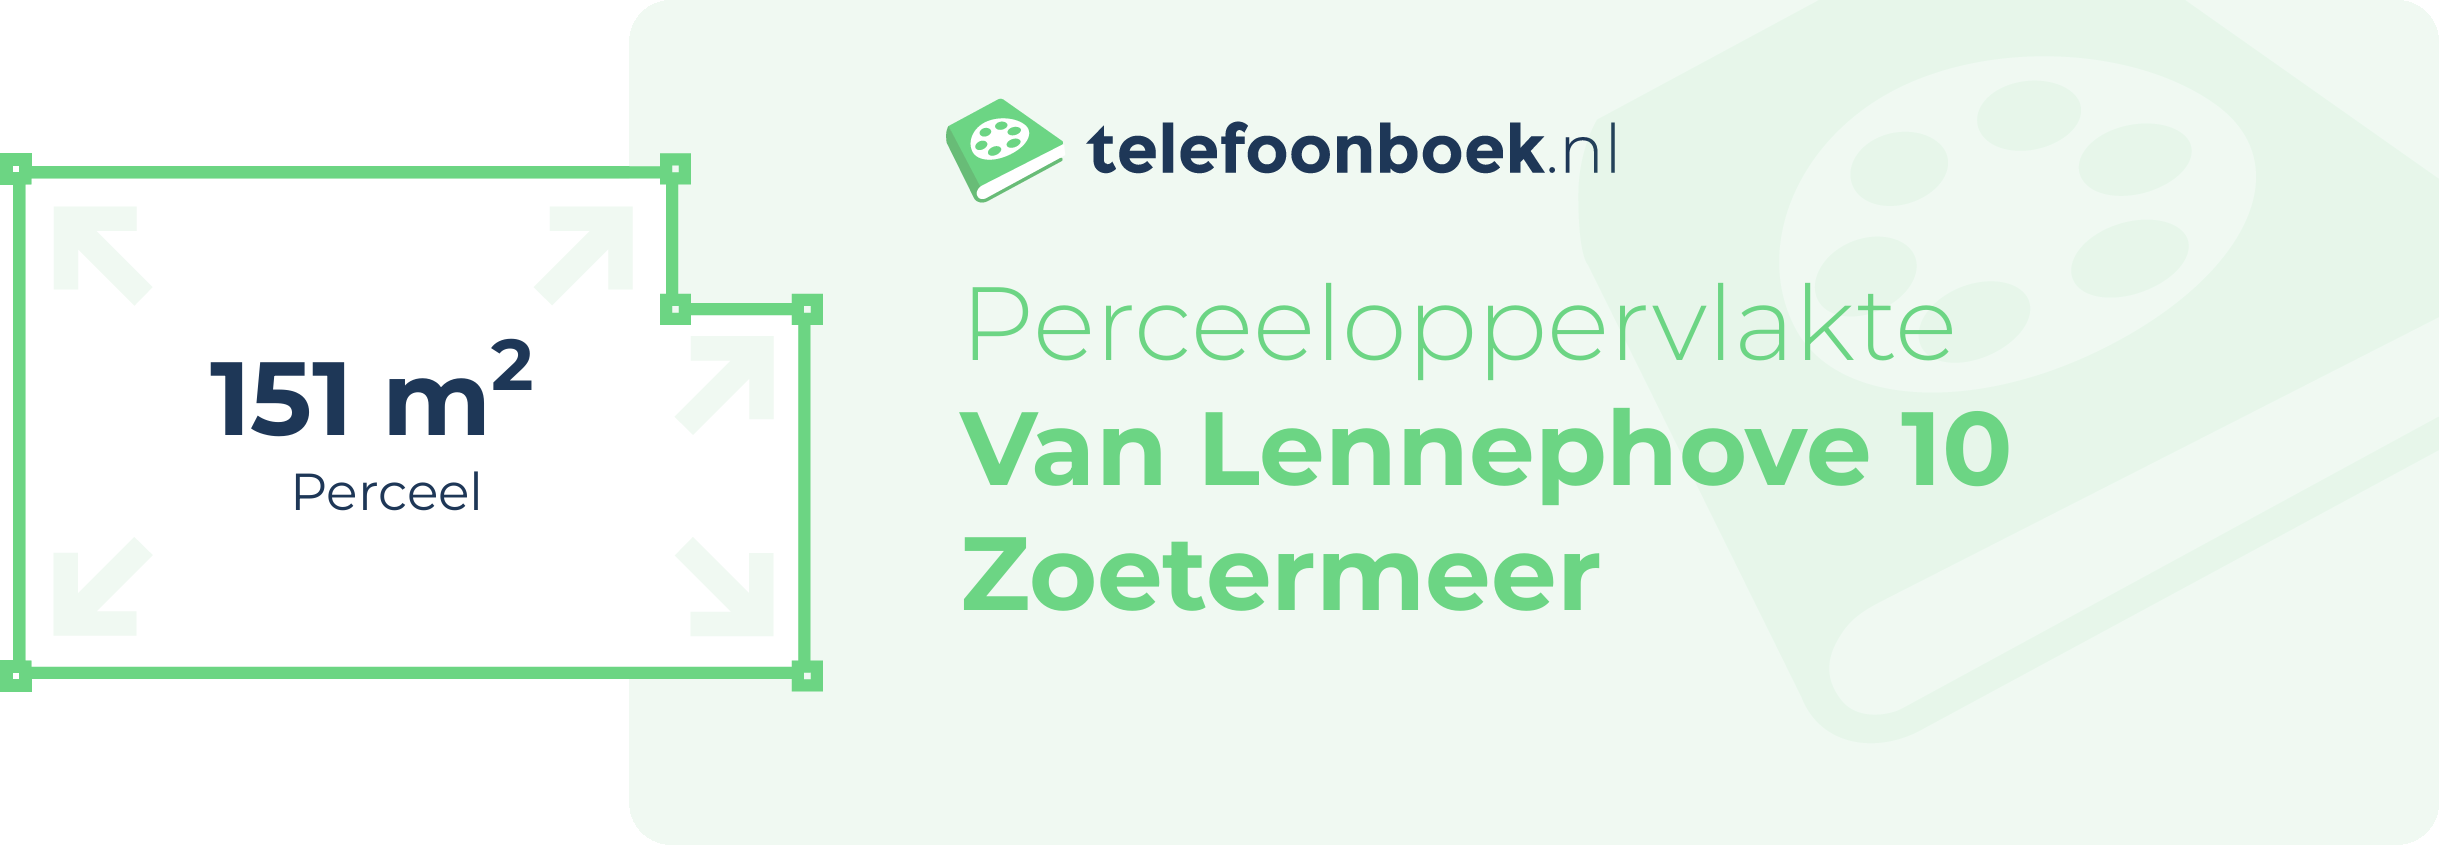 Perceeloppervlakte Van Lennephove 10 Zoetermeer